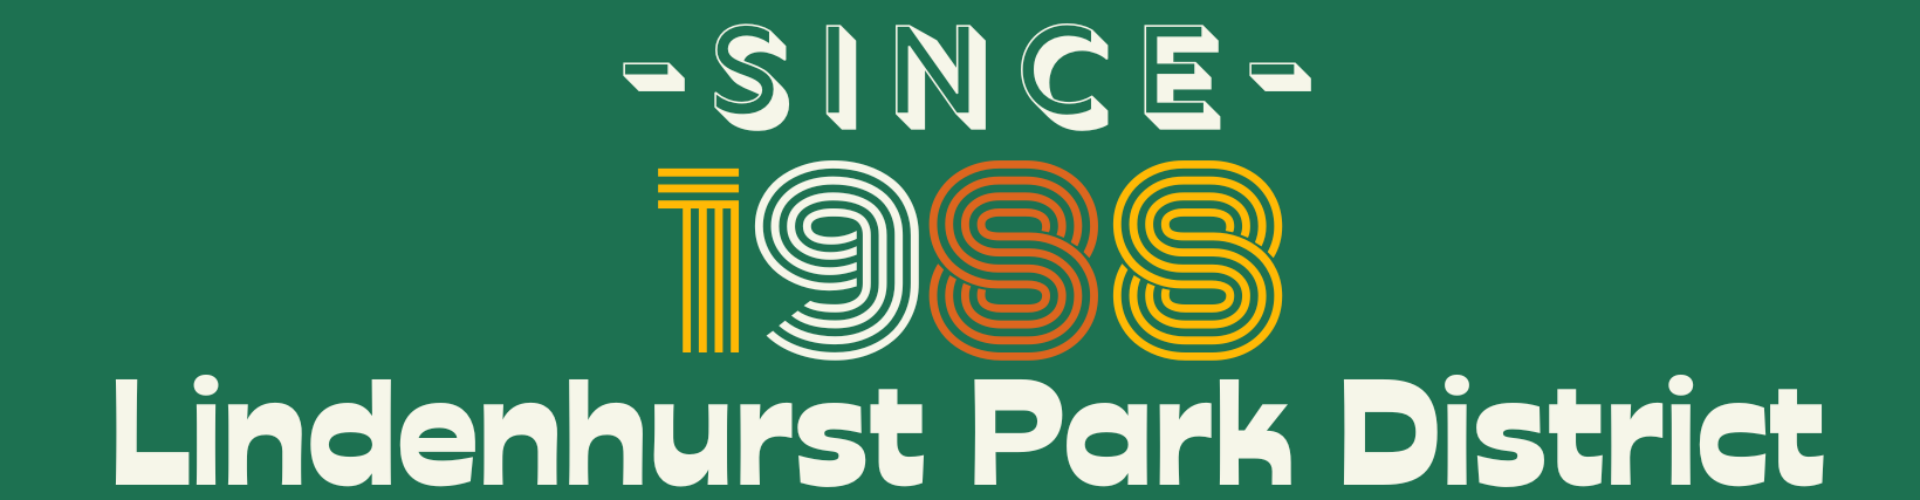 Lindenhurst Park District - since 1988